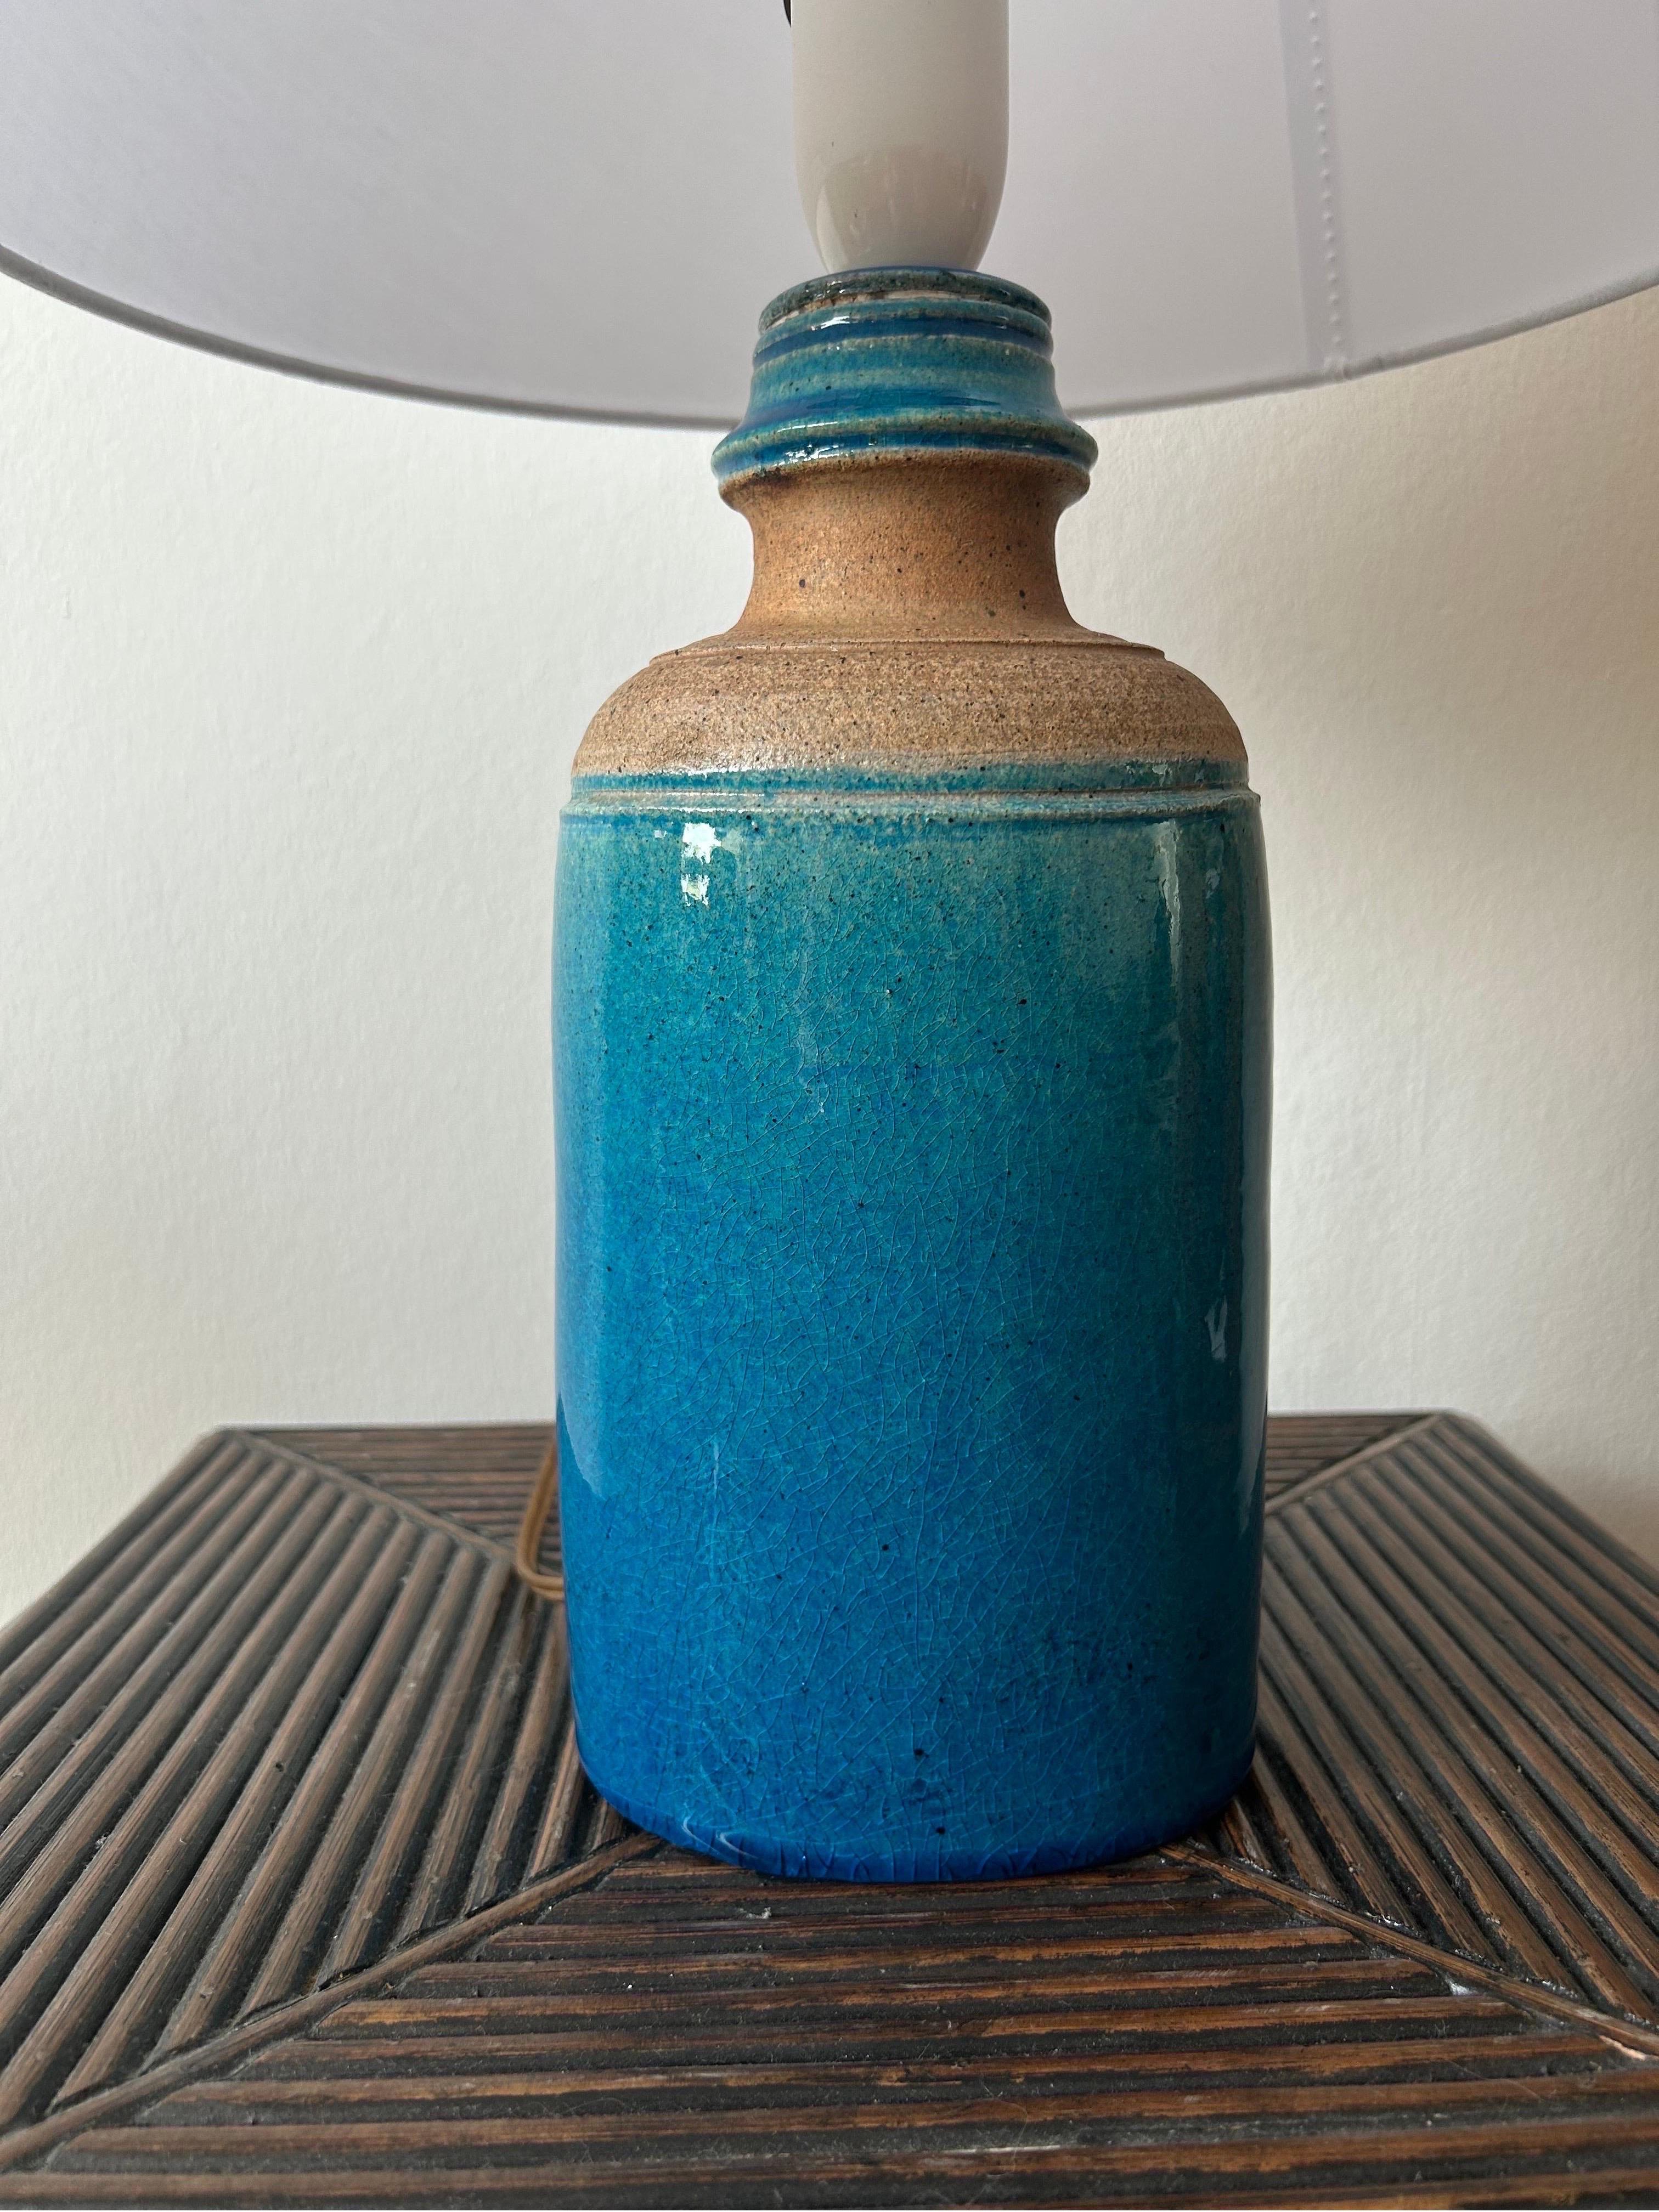 Rare lampe de table de forme ovale en céramique Kähler avec la glaçure bleue classique de Kähler, provenant du Danemark dans les années 1960.


Kähler Keramik est une entreprise de céramique danoise, originaire de Næstved.
La céramique de Kähler